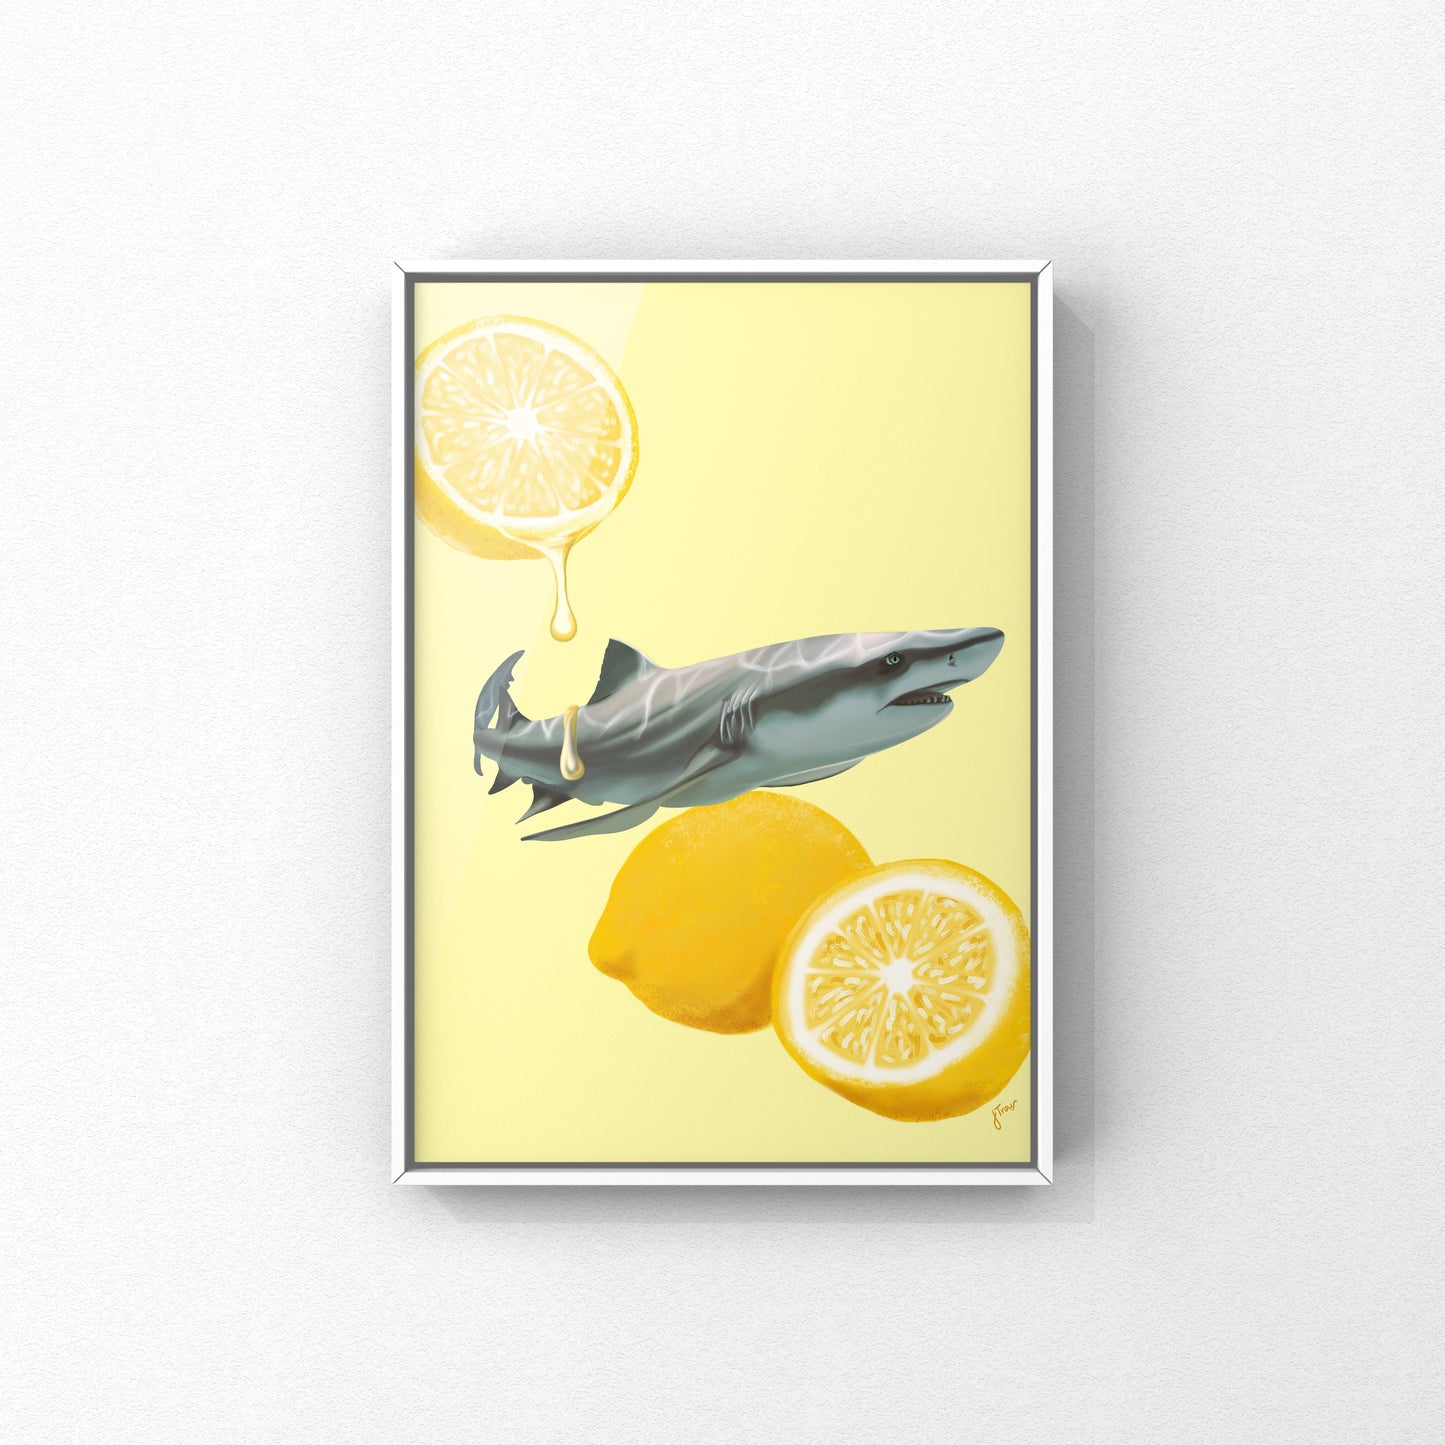 ‘When Life Gives You Lemon Sharks’ Art Prints